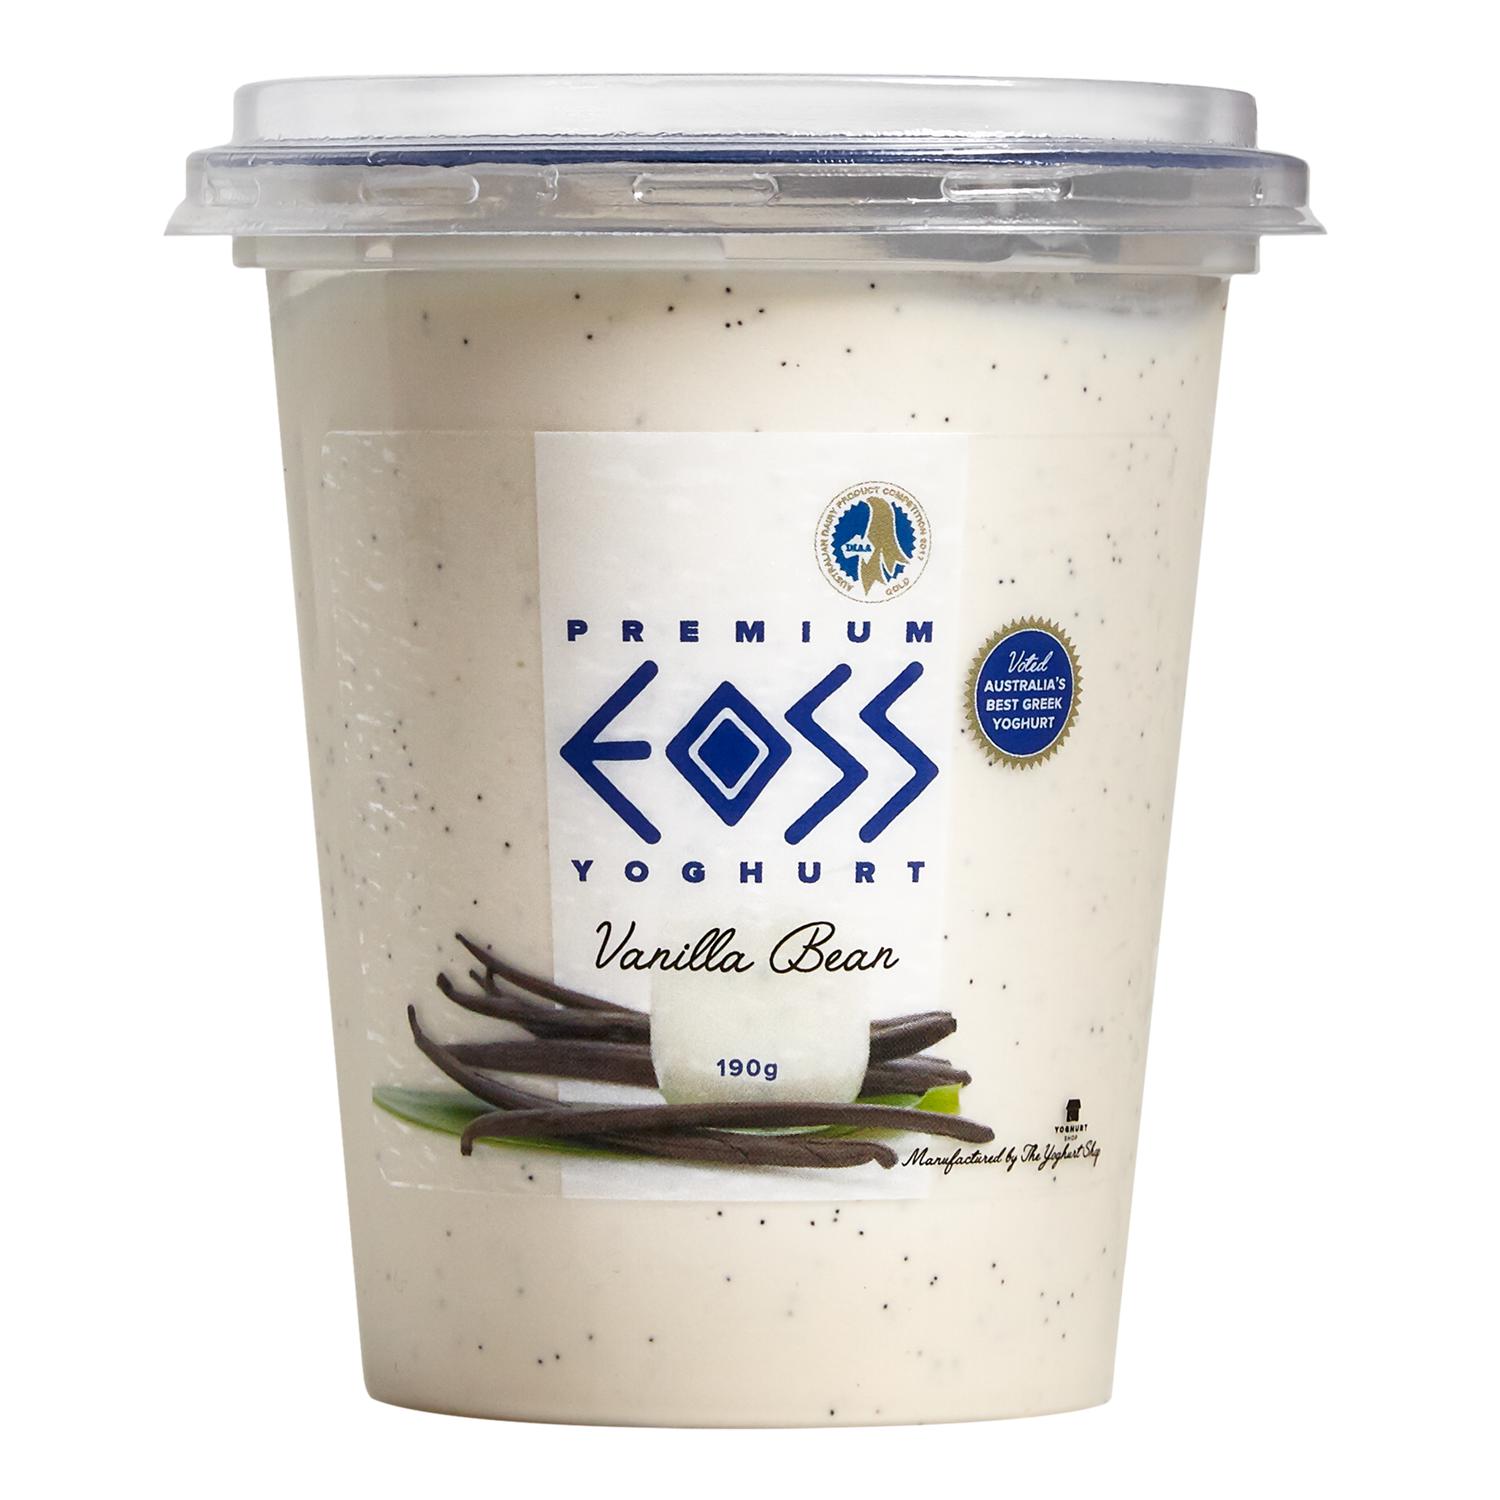 EOSS Yoghurt Vanilla Bean Cup 190g